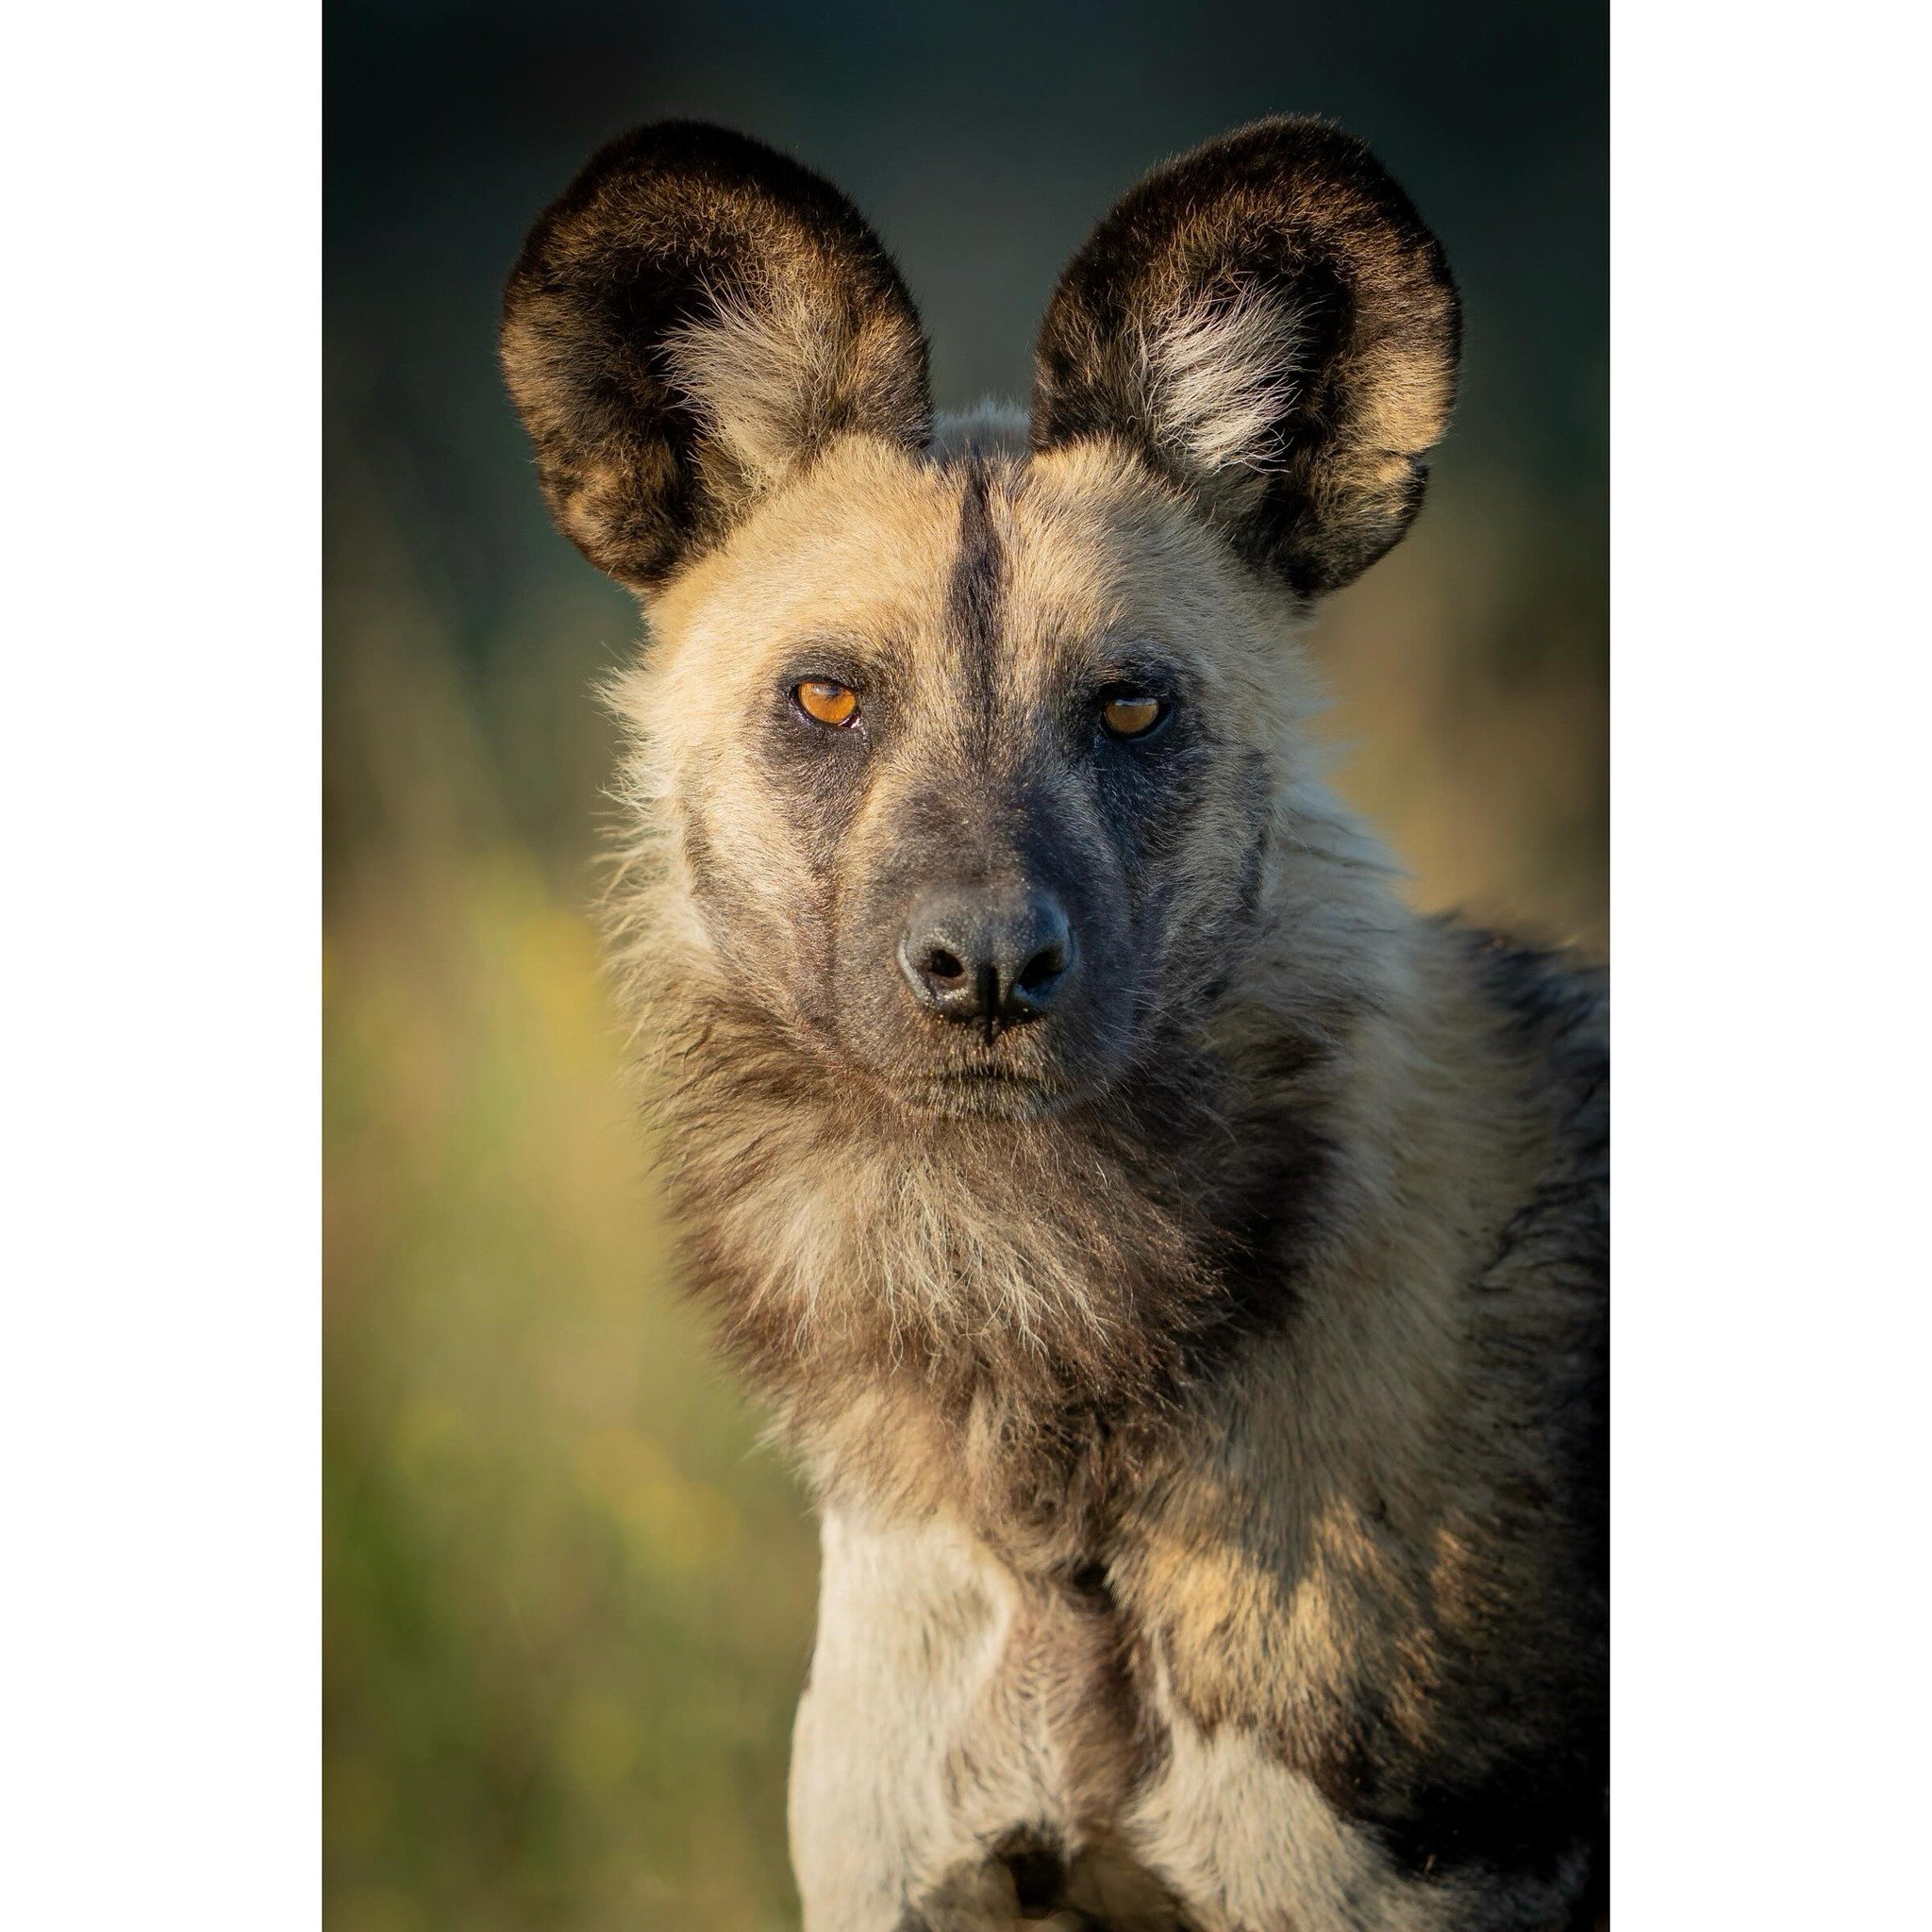 Intensity. 

#wilddog #wilddogconservation #endangeredspecies #wildlife #wildlifephotography #africawildlife #bbcearth #yourshotphotographer @sonyalphafemale @thejaoreserve @jaocampbotswana